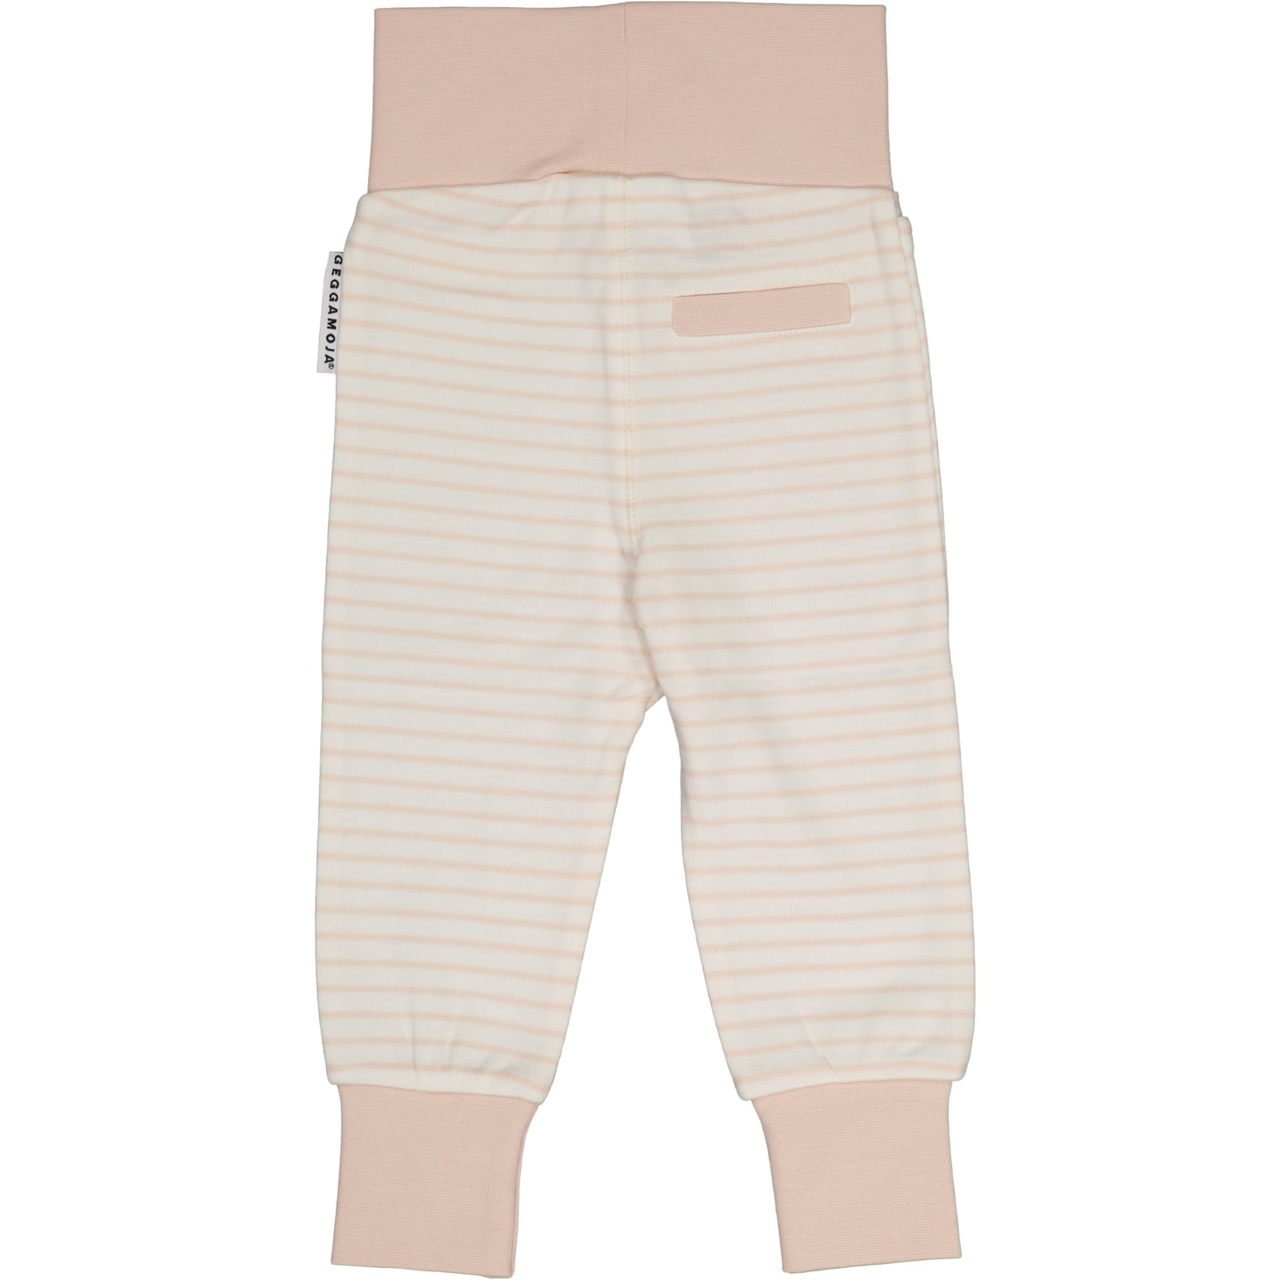 Vauvan housut L.vaaleanpunainen/offvalkoinen 98/104